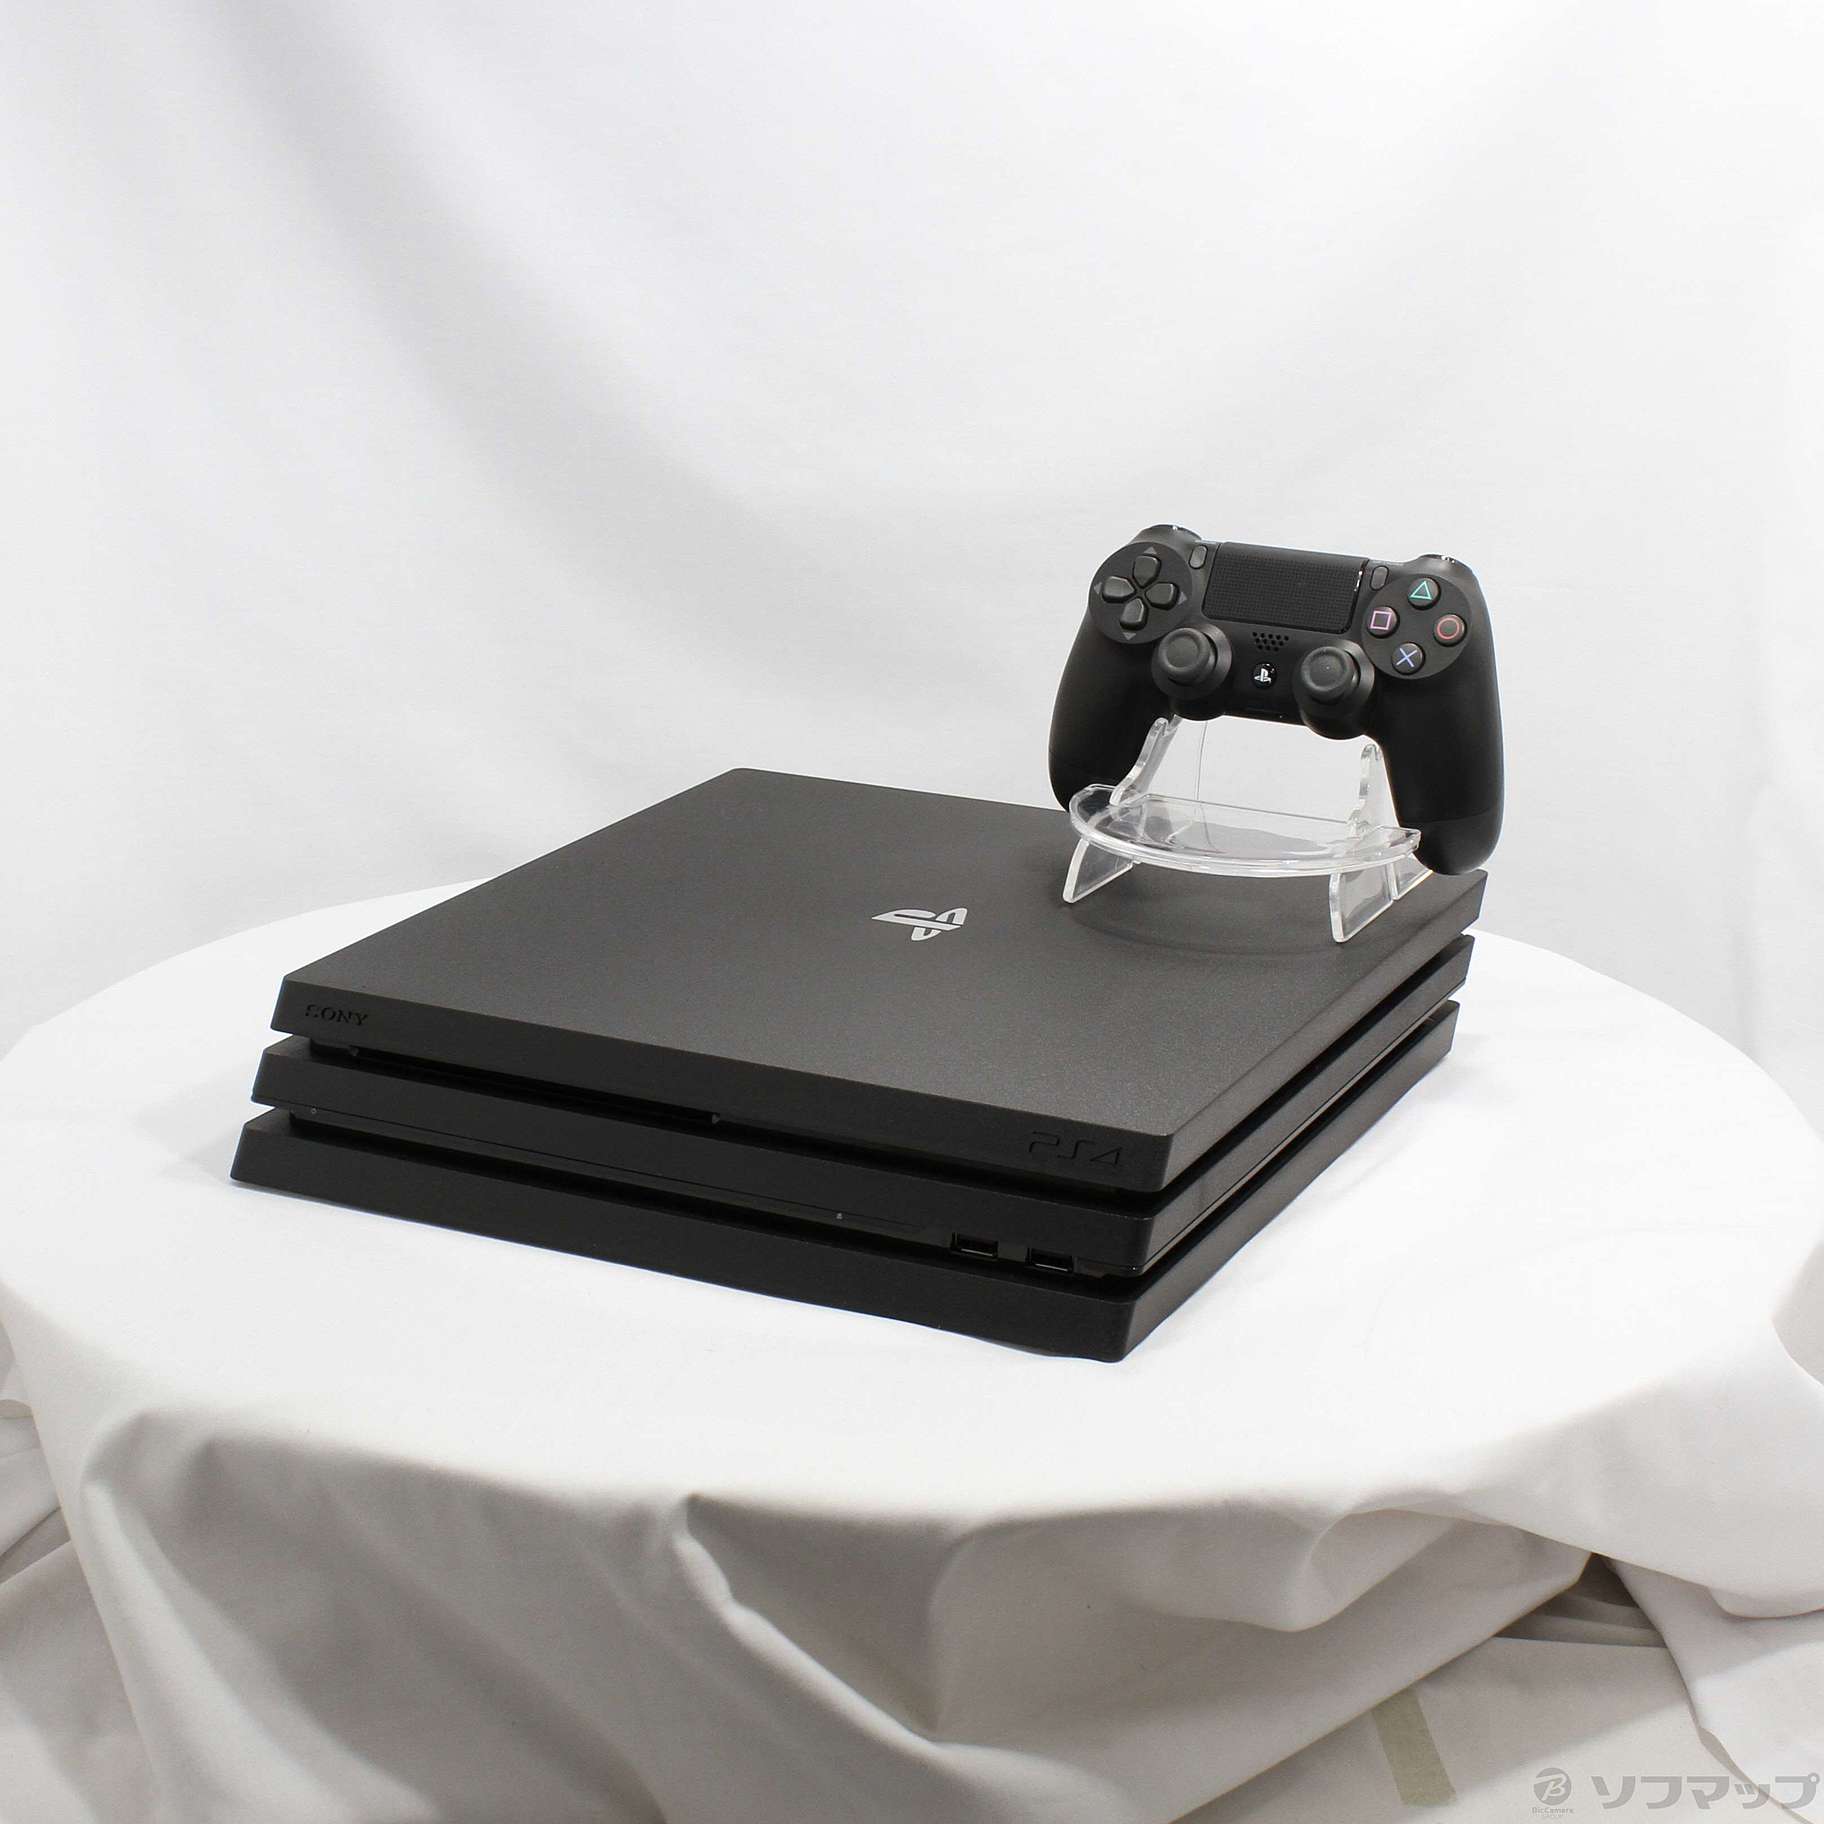 〔中古品〕 PlayStation 4 Pro ジェット・ブラック 1TB CUH-7200BB01